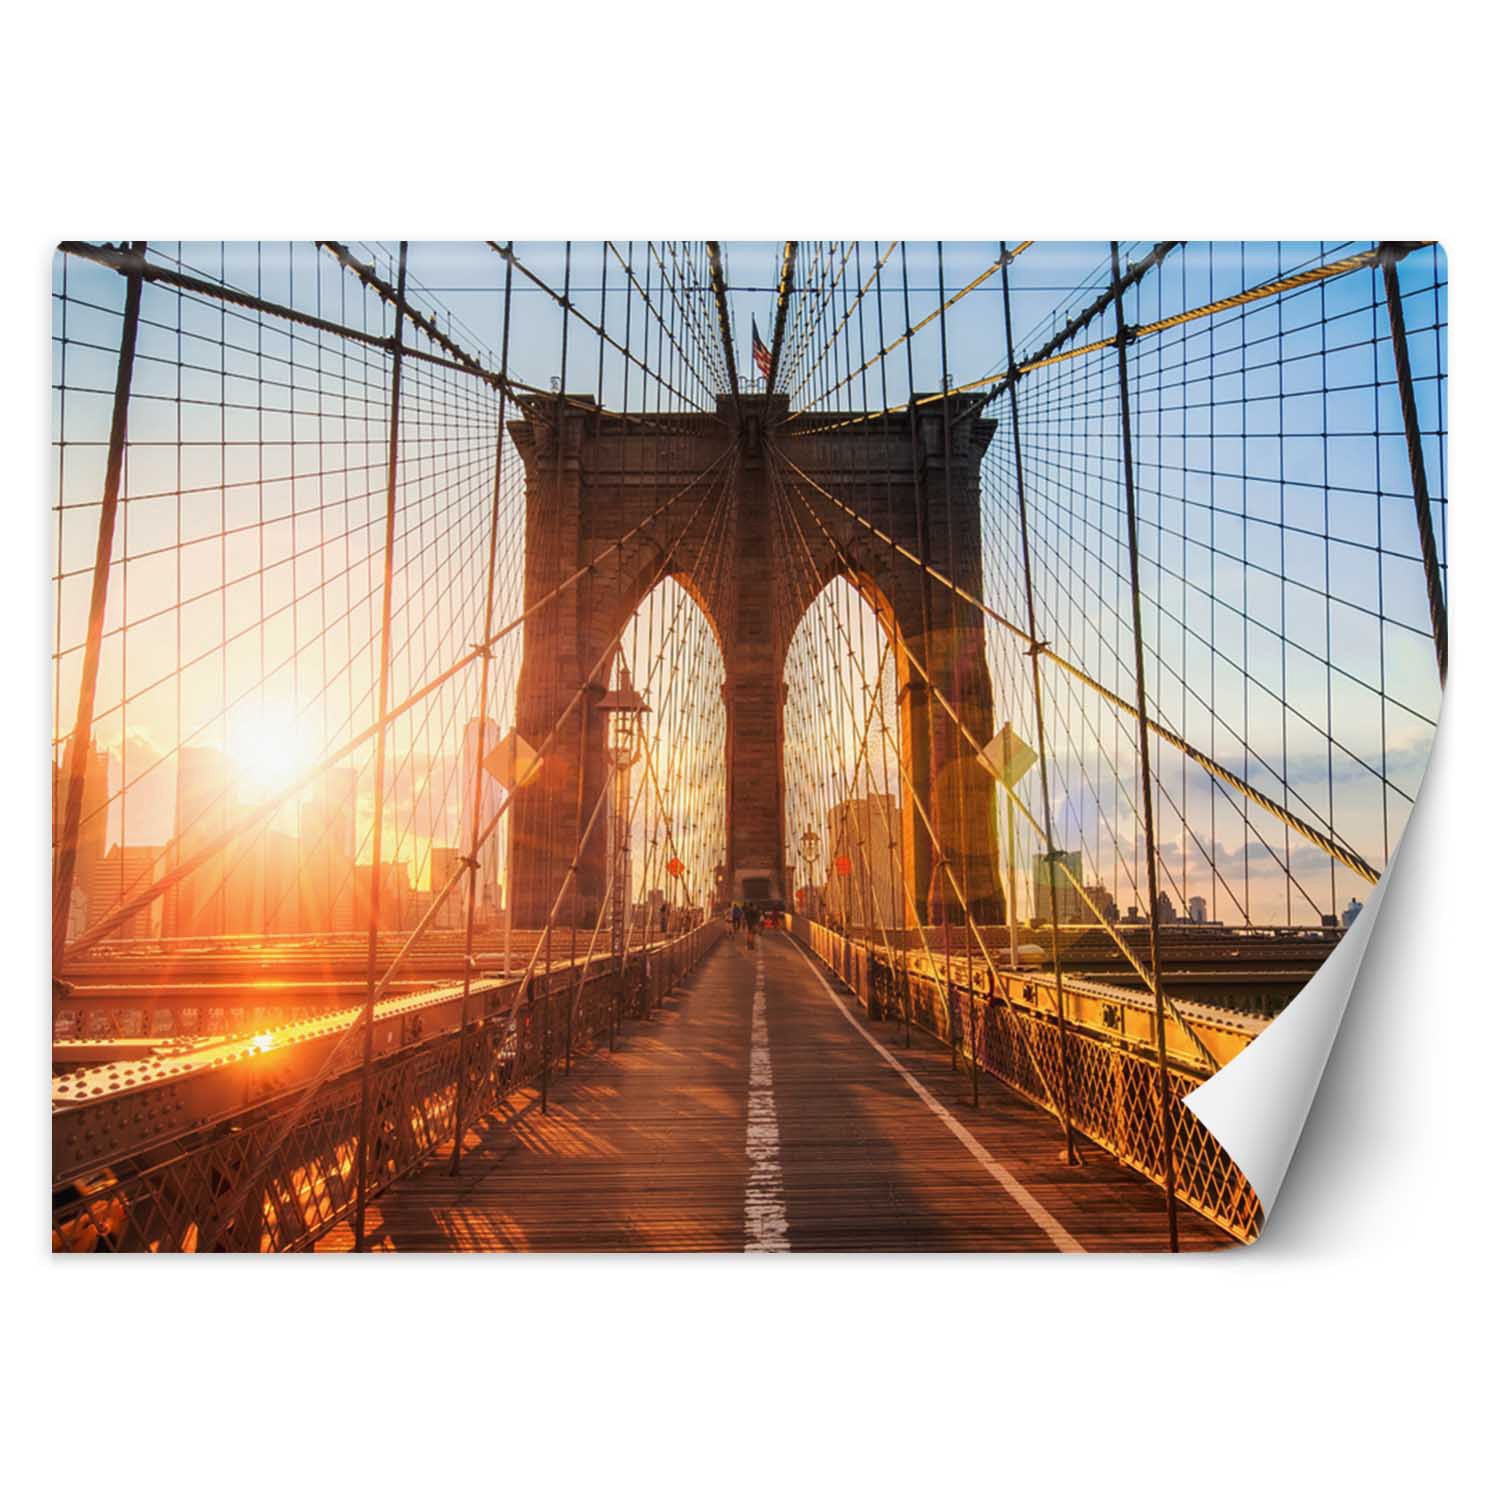 Trend24 – Behang – Brooklyn Bridge – Behangpapier – Fotobehang – Behang Woonkamer – 450x315x2 cm – Incl. behanglijm